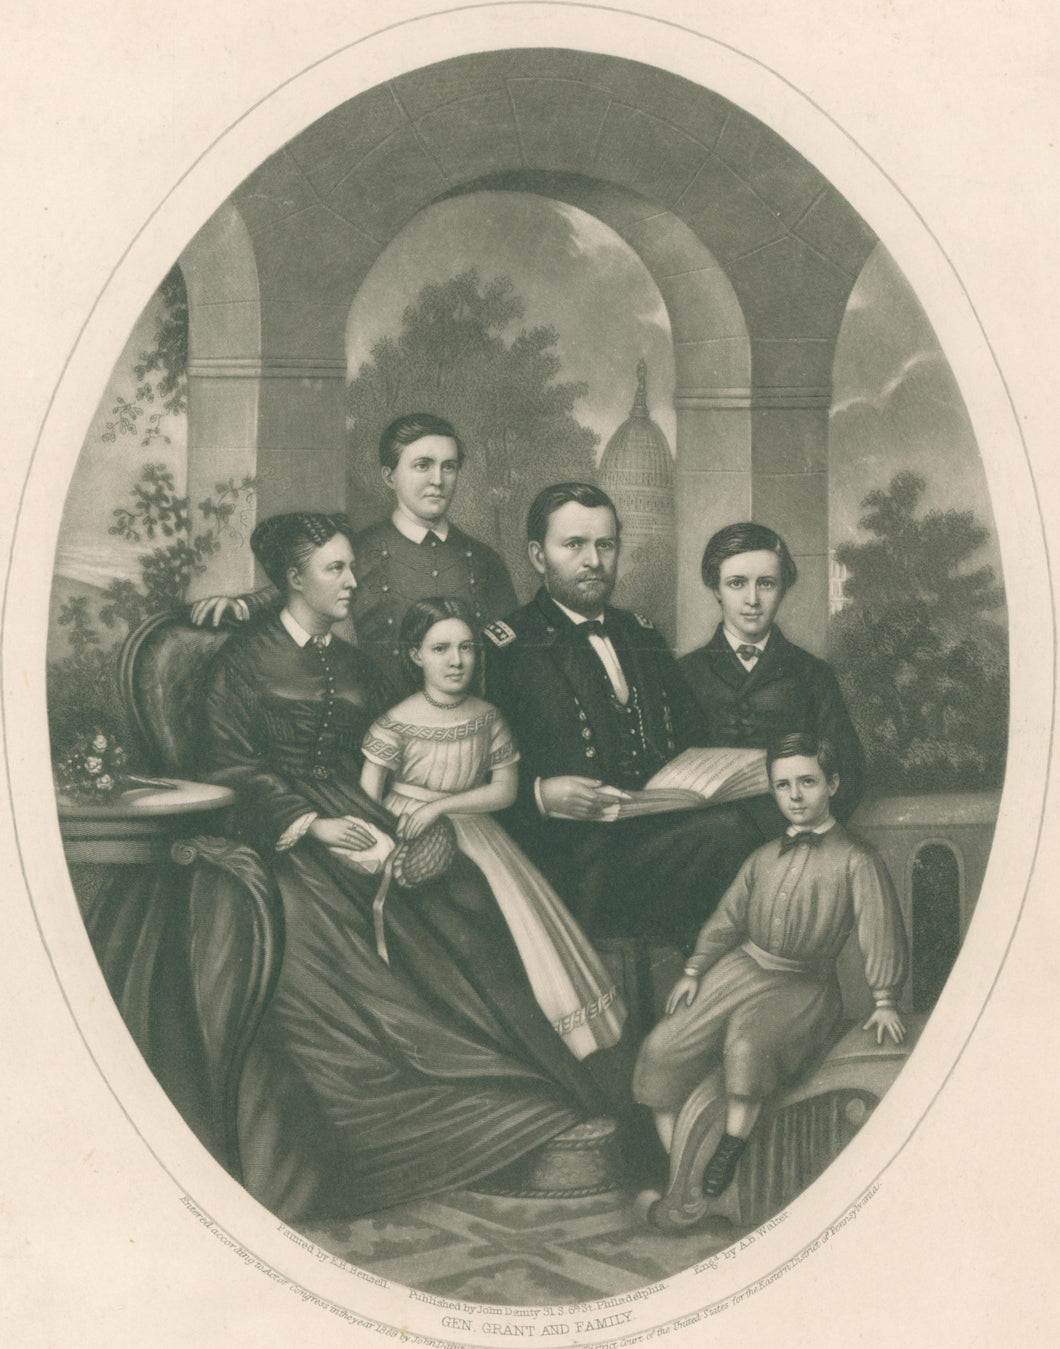 Bensell, E.B. “Gen. Grant and Family